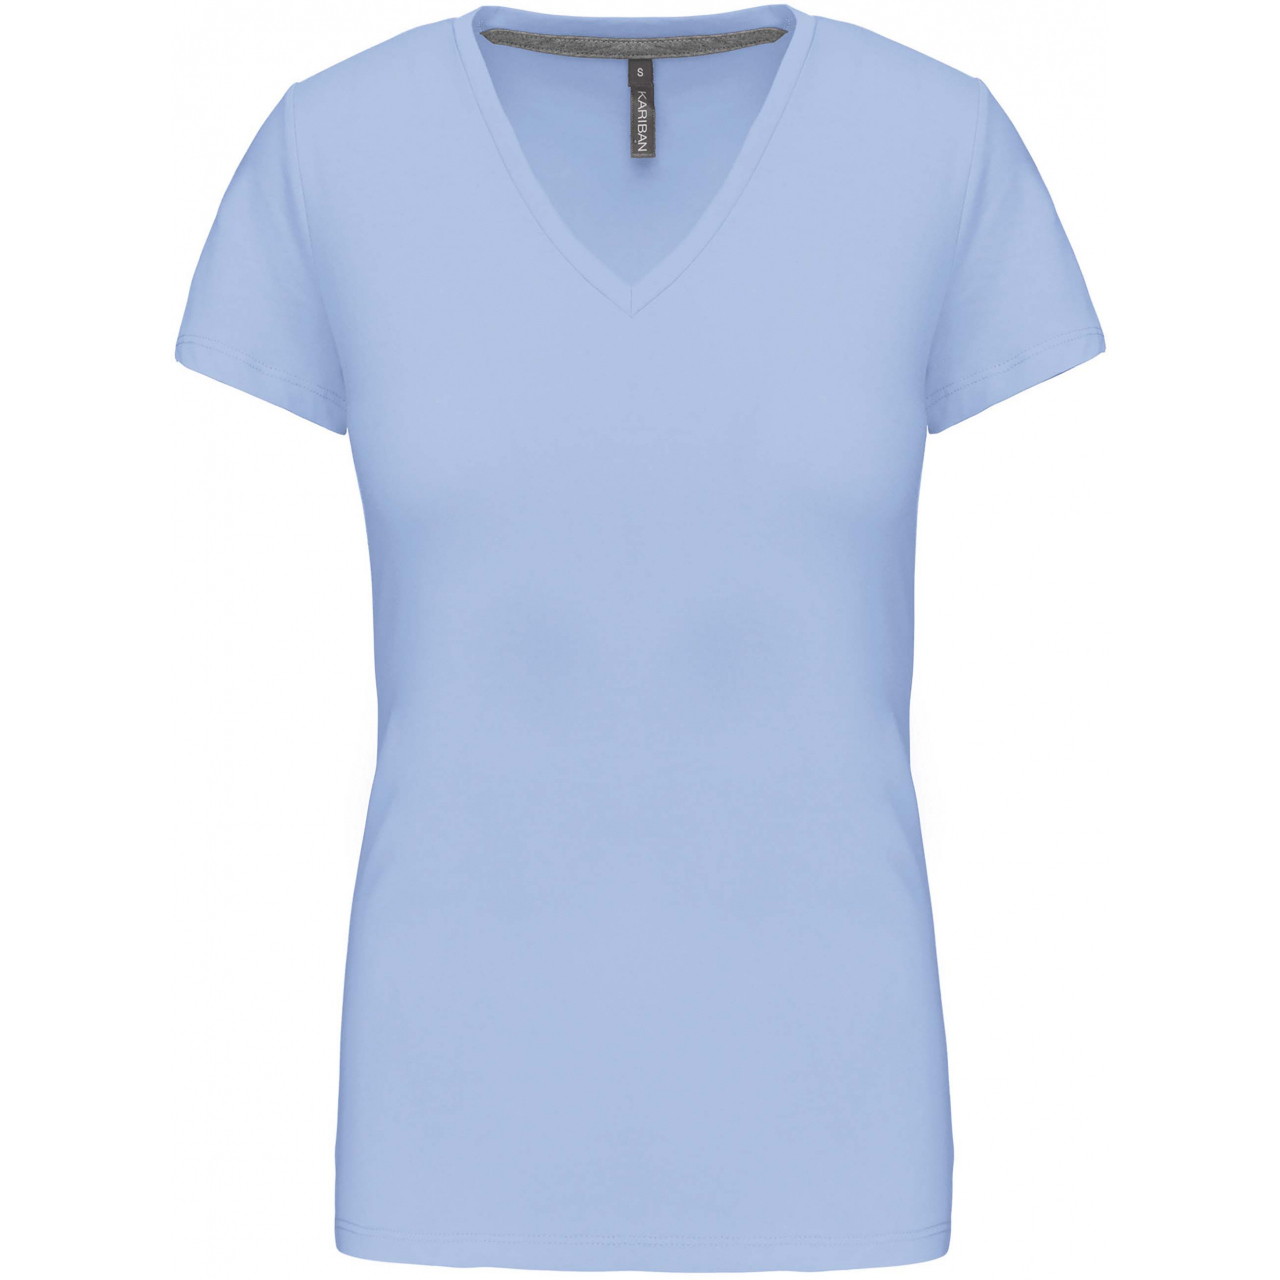 Dámské tričko Kariban V-neck s krátkým rukávem - světle modré, XXL